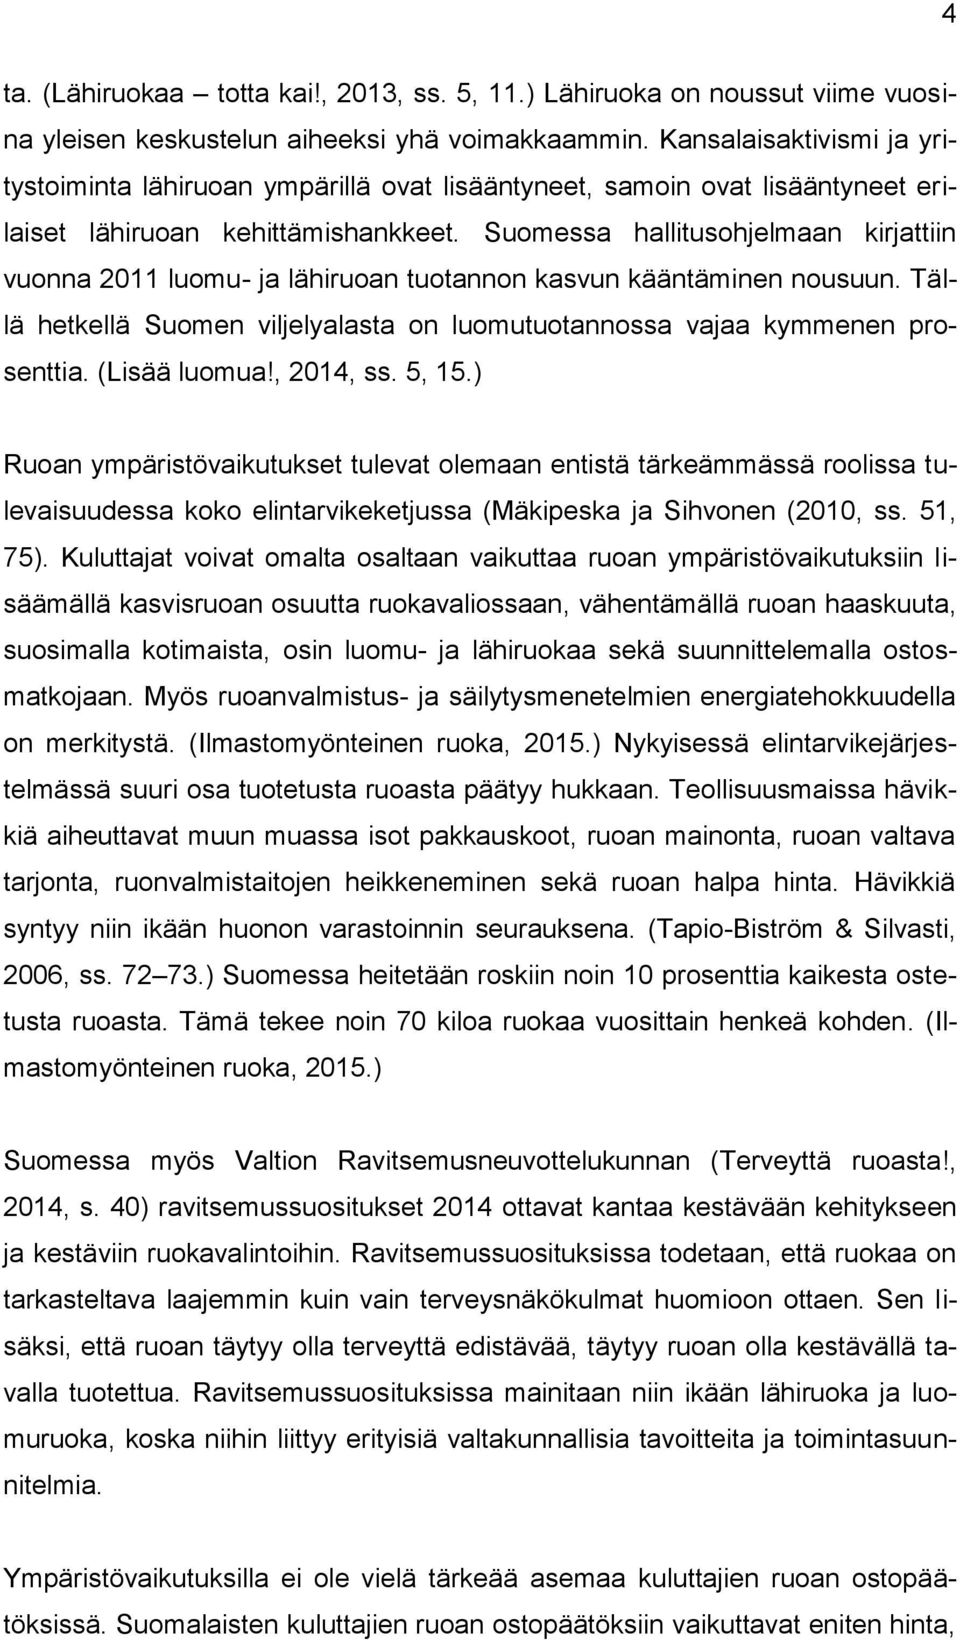 Suomessa hallitusohjelmaan kirjattiin vuonna 2011 luomu- ja lähiruoan tuotannon kasvun kääntäminen nousuun. Tällä hetkellä Suomen viljelyalasta on luomutuotannossa vajaa kymmenen prosenttia.